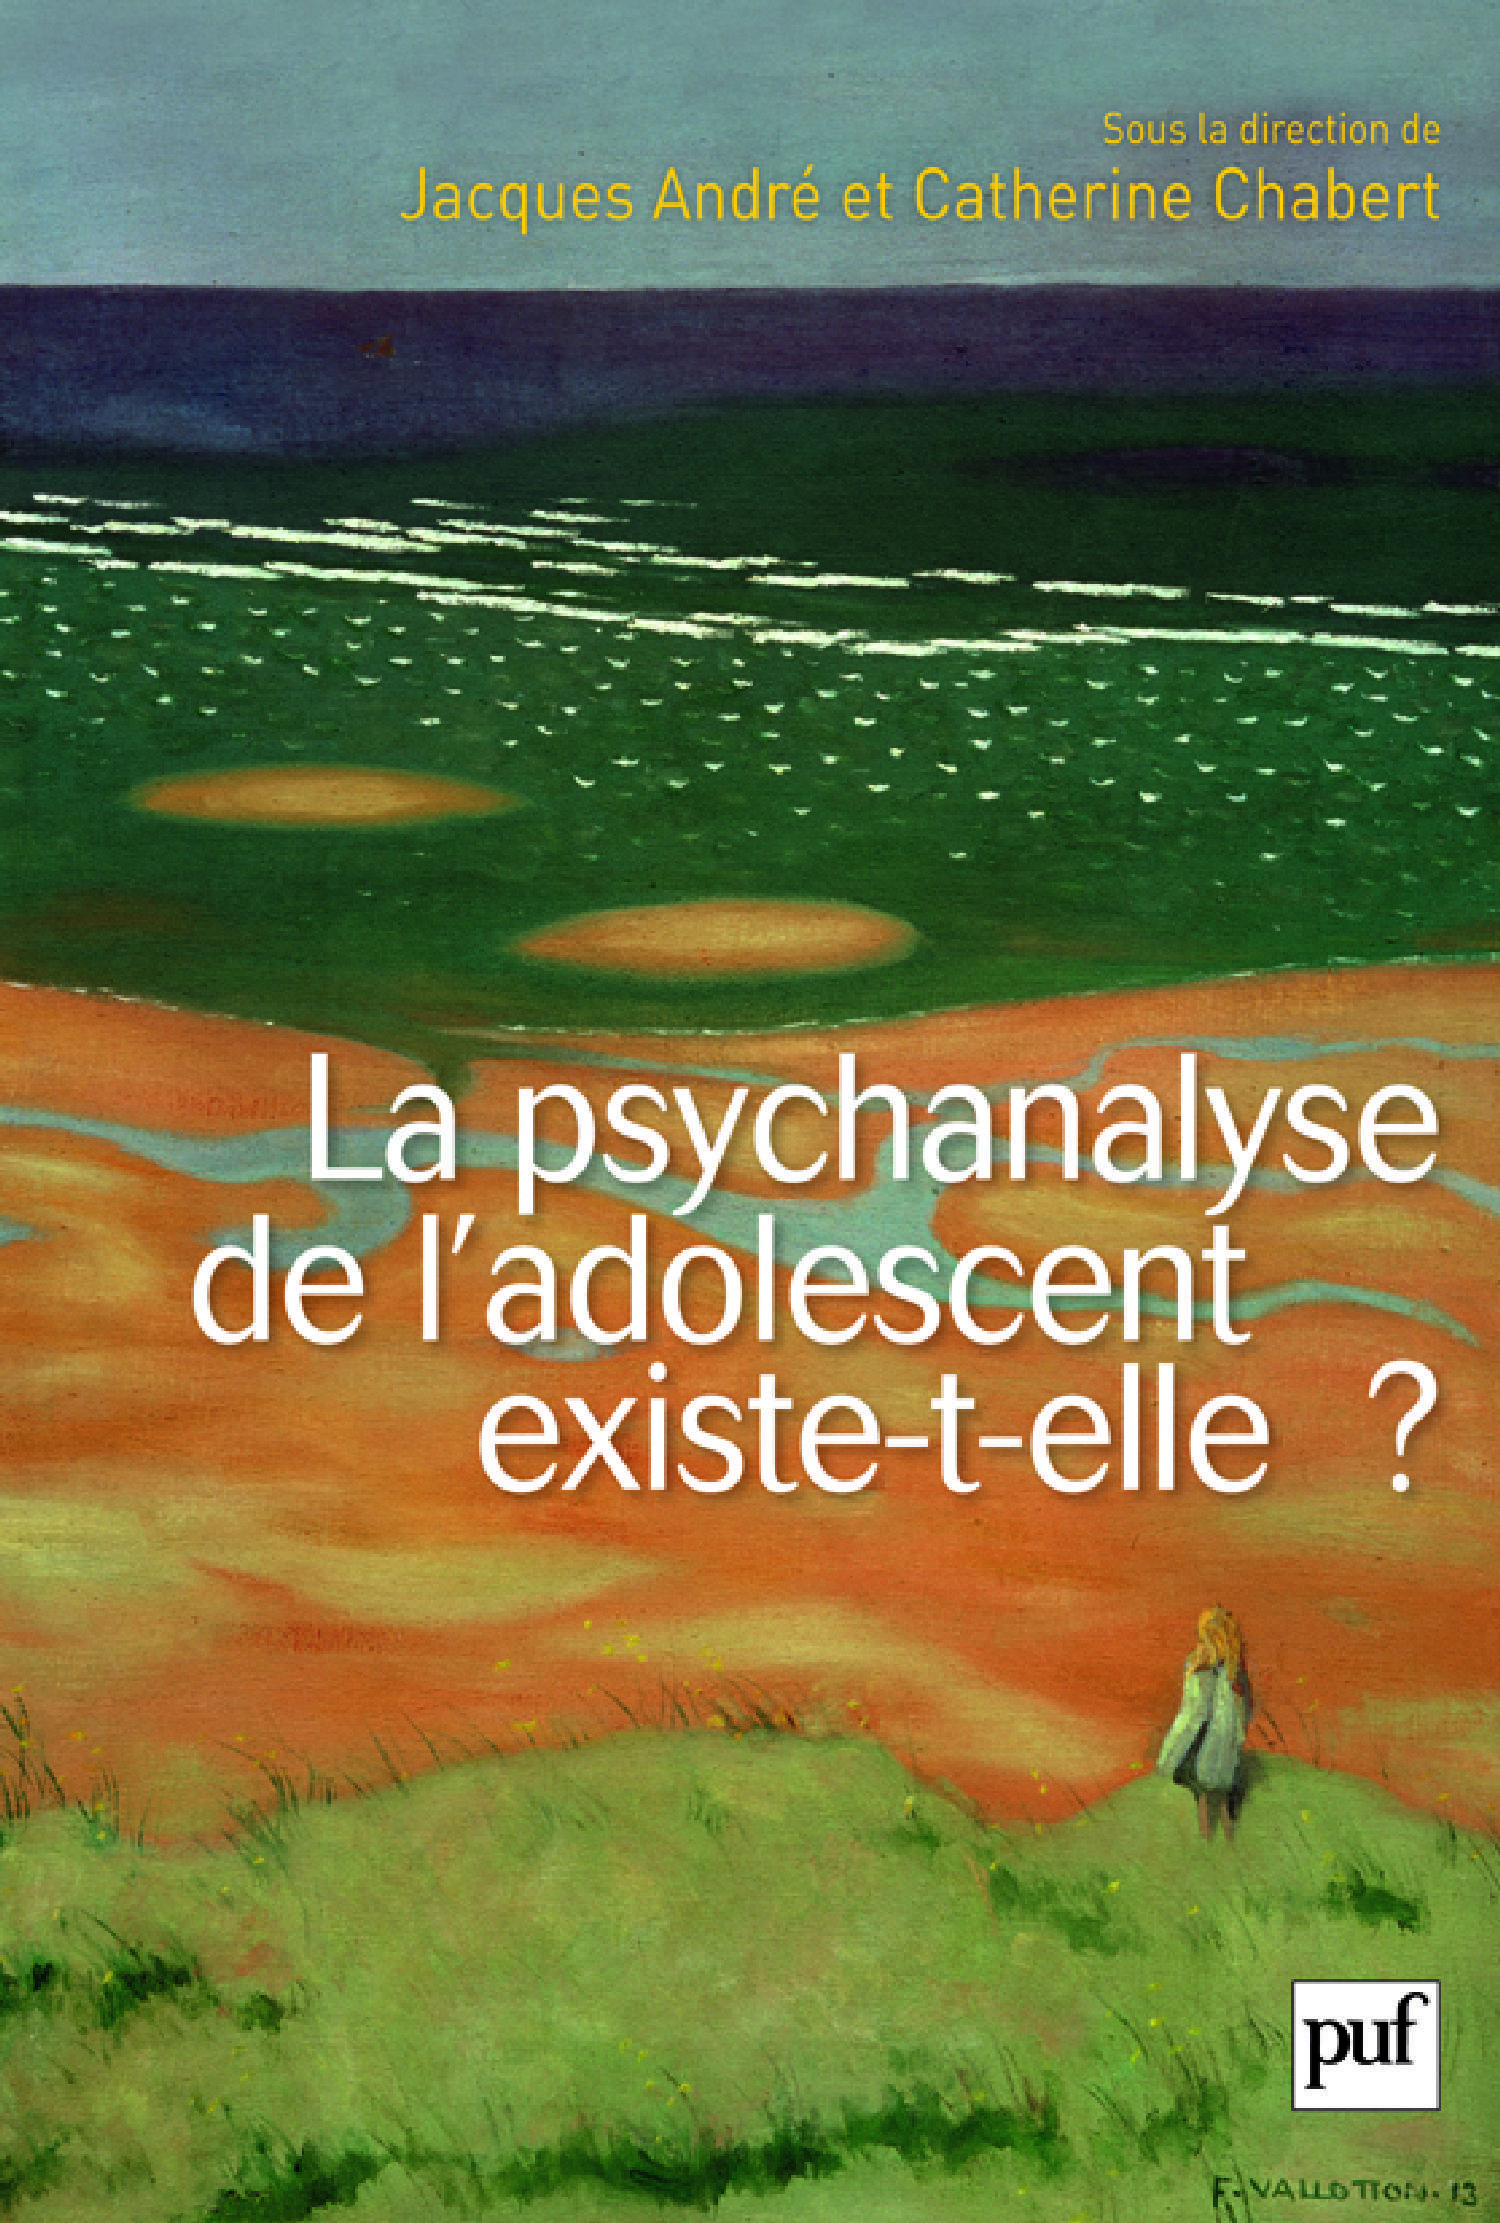 La psychanalyse de l'adolescent existe-t-elle ? - Jacques André, Catherine Chabert